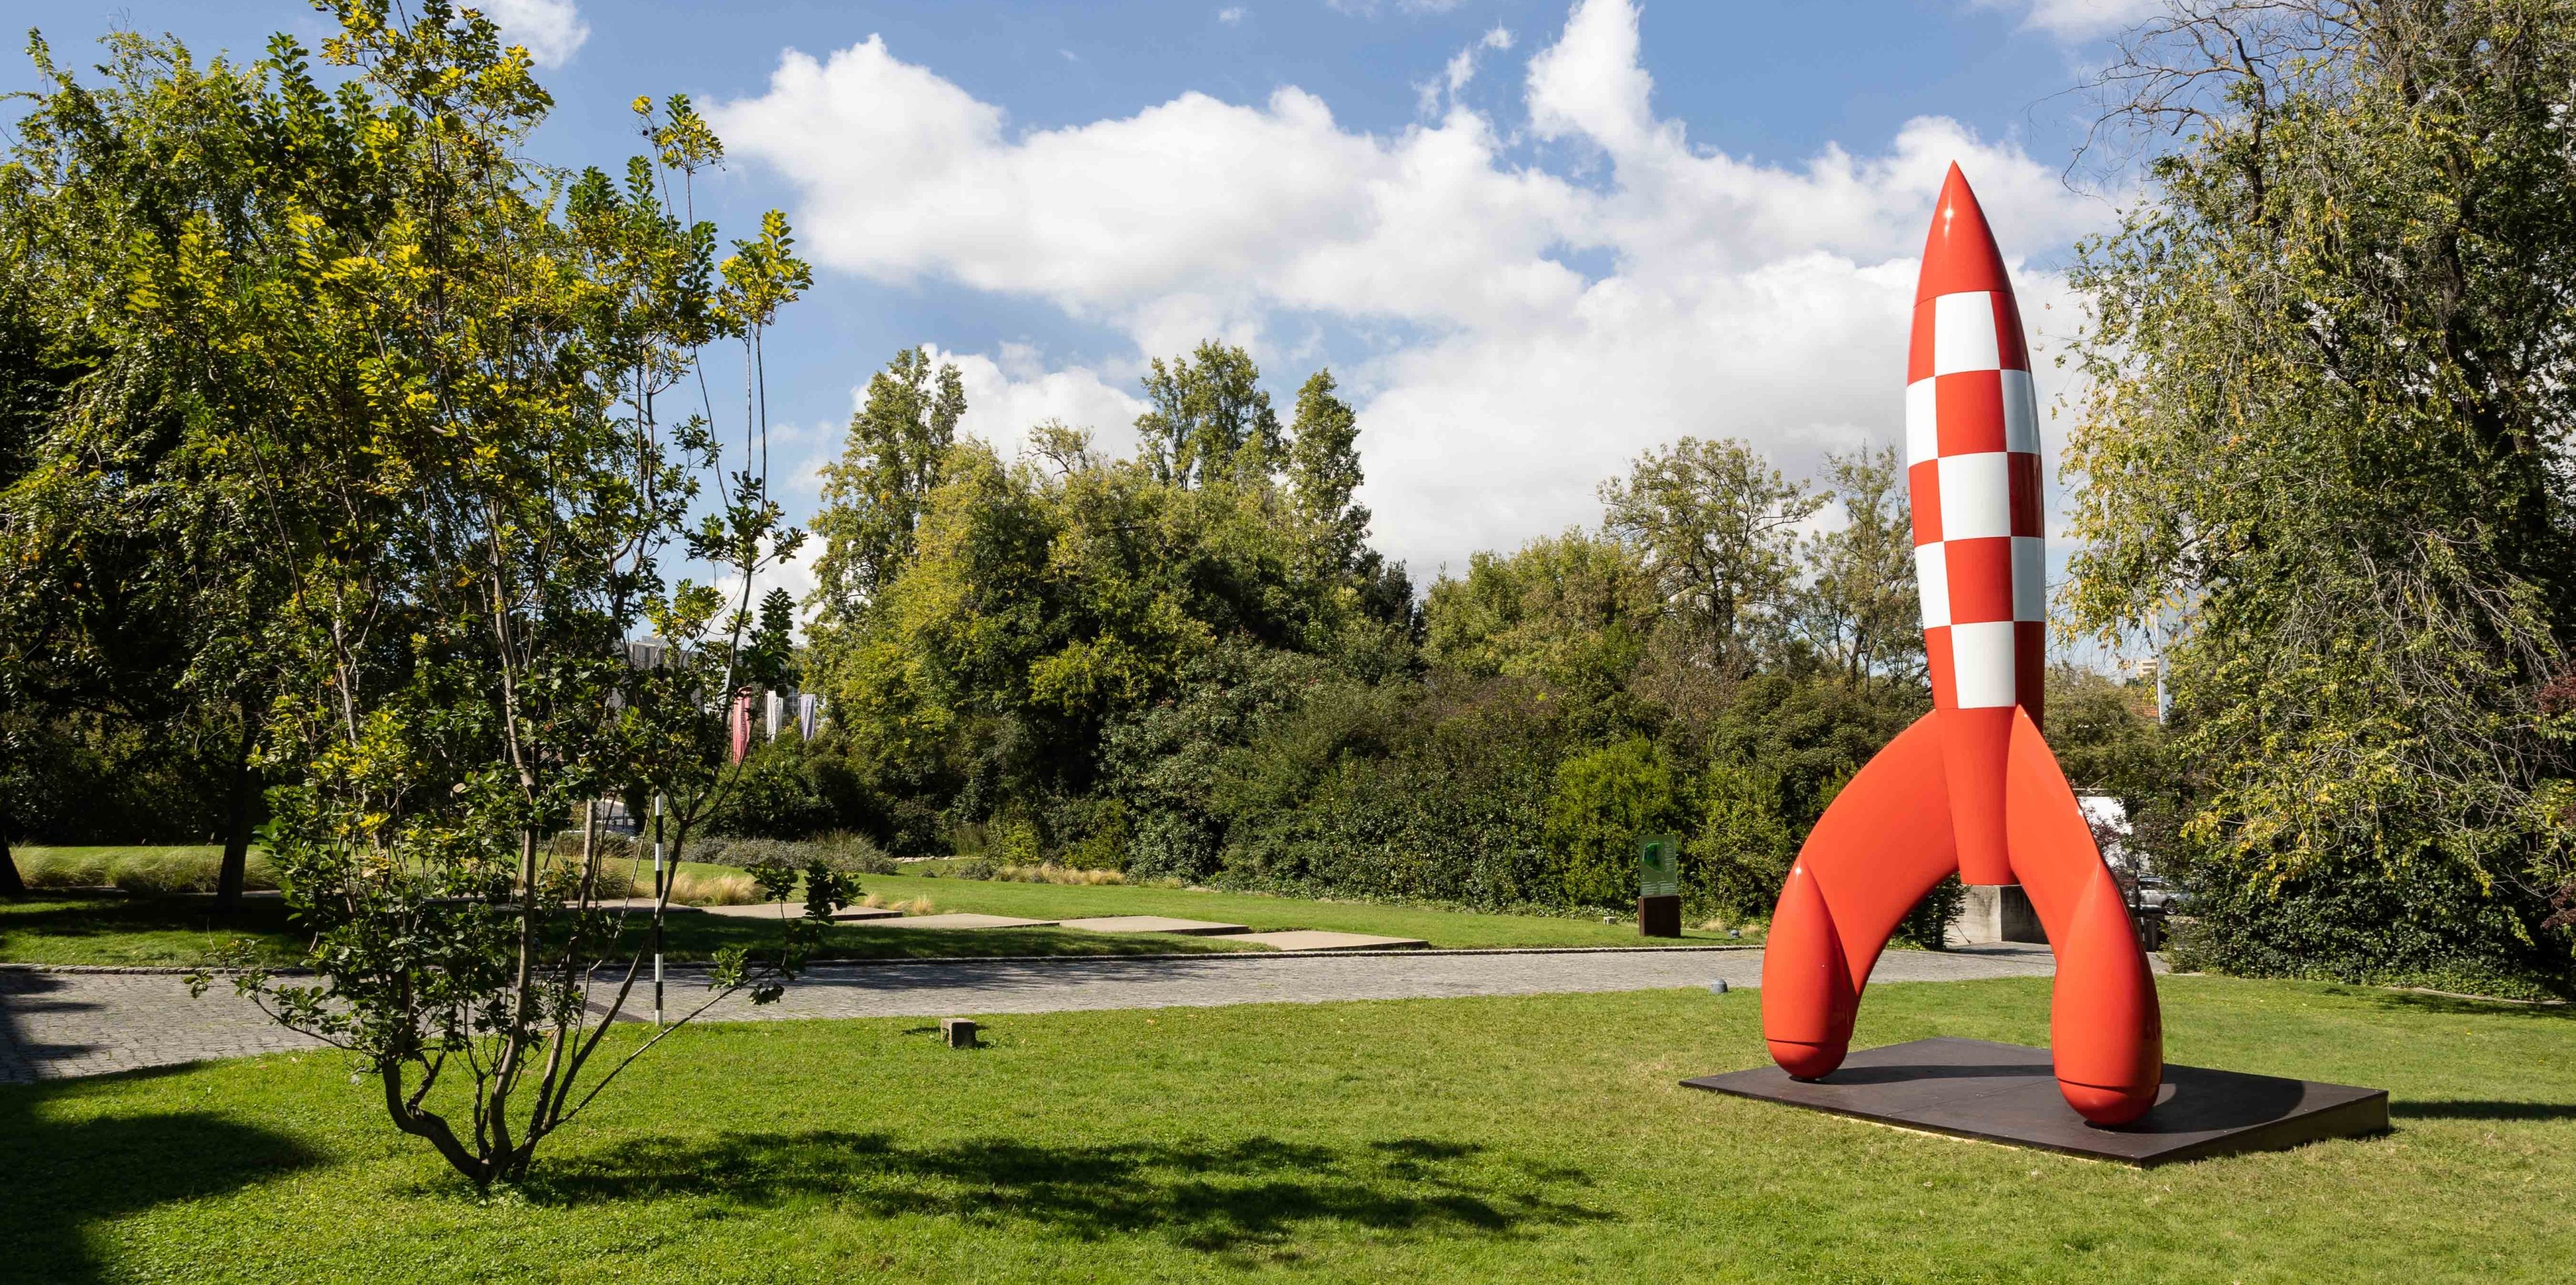 Uma réplica do famoso foguetão que é um dos protagonistas das histórias de Tintim promete ser uma das maiores atrações dos próximos meses nos jardins da Fundação Gulbenkian